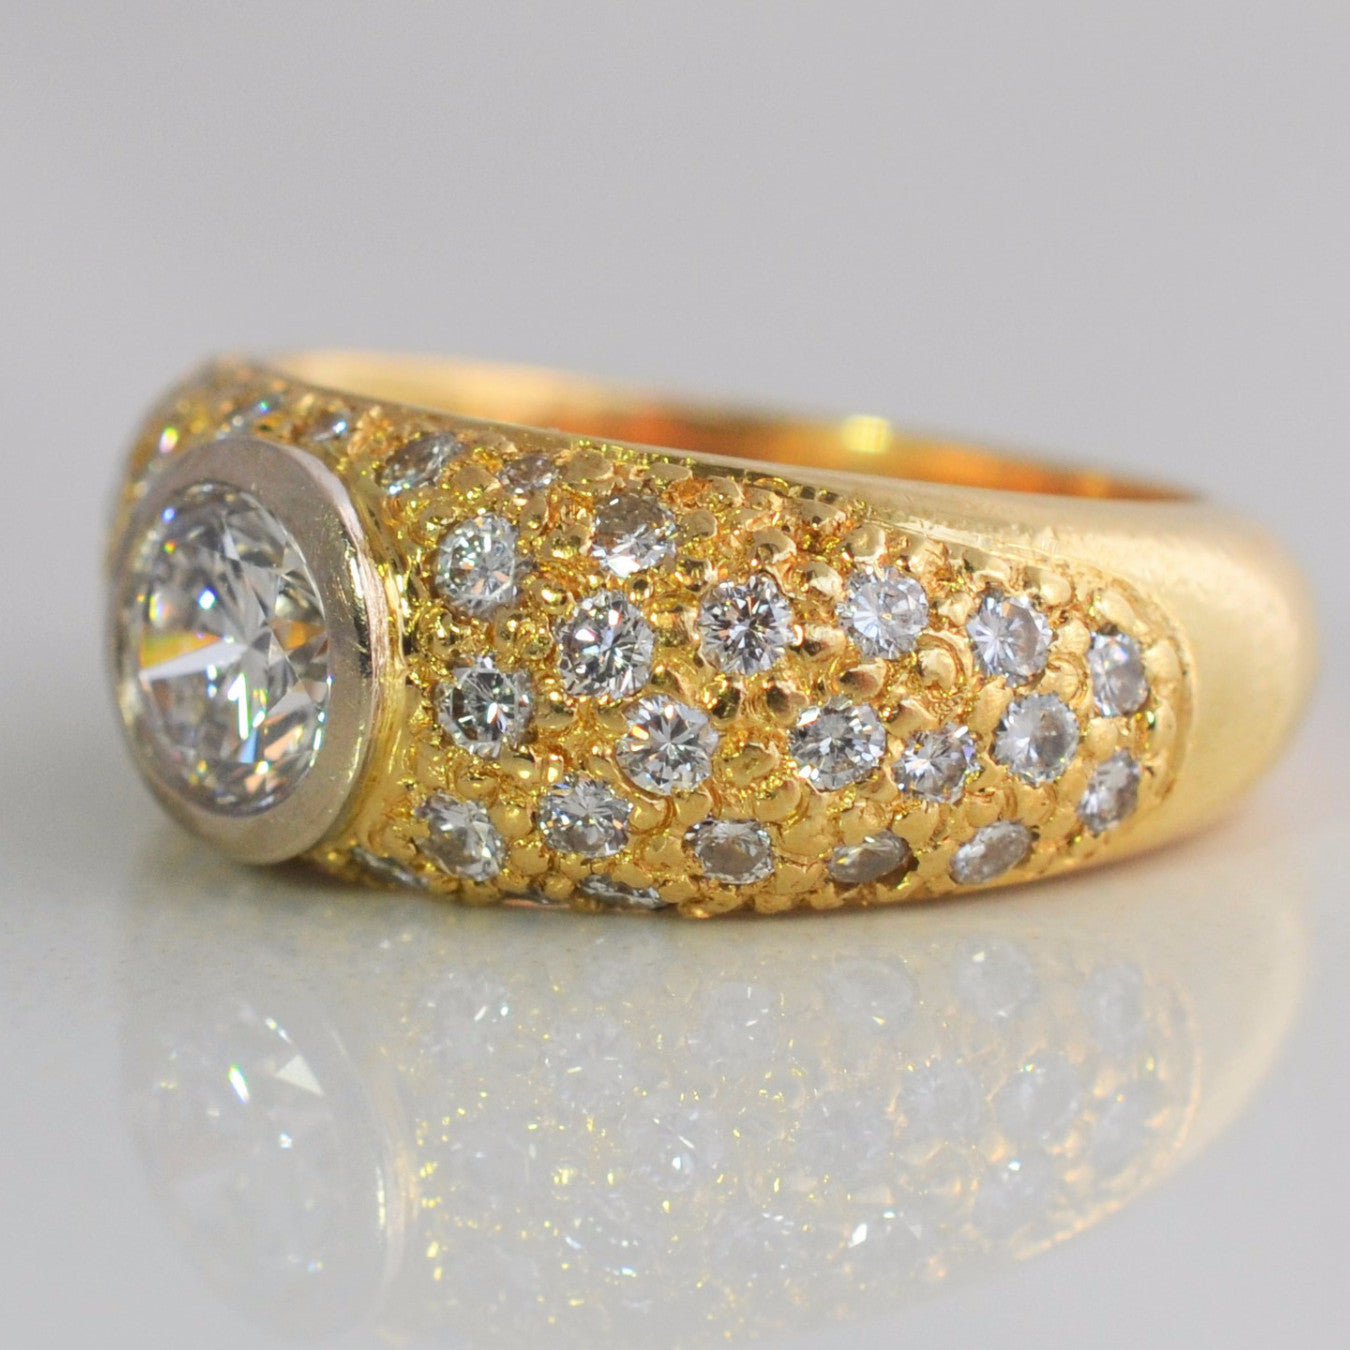 Vintage engagement ring with gold, gold bezel vintage ring